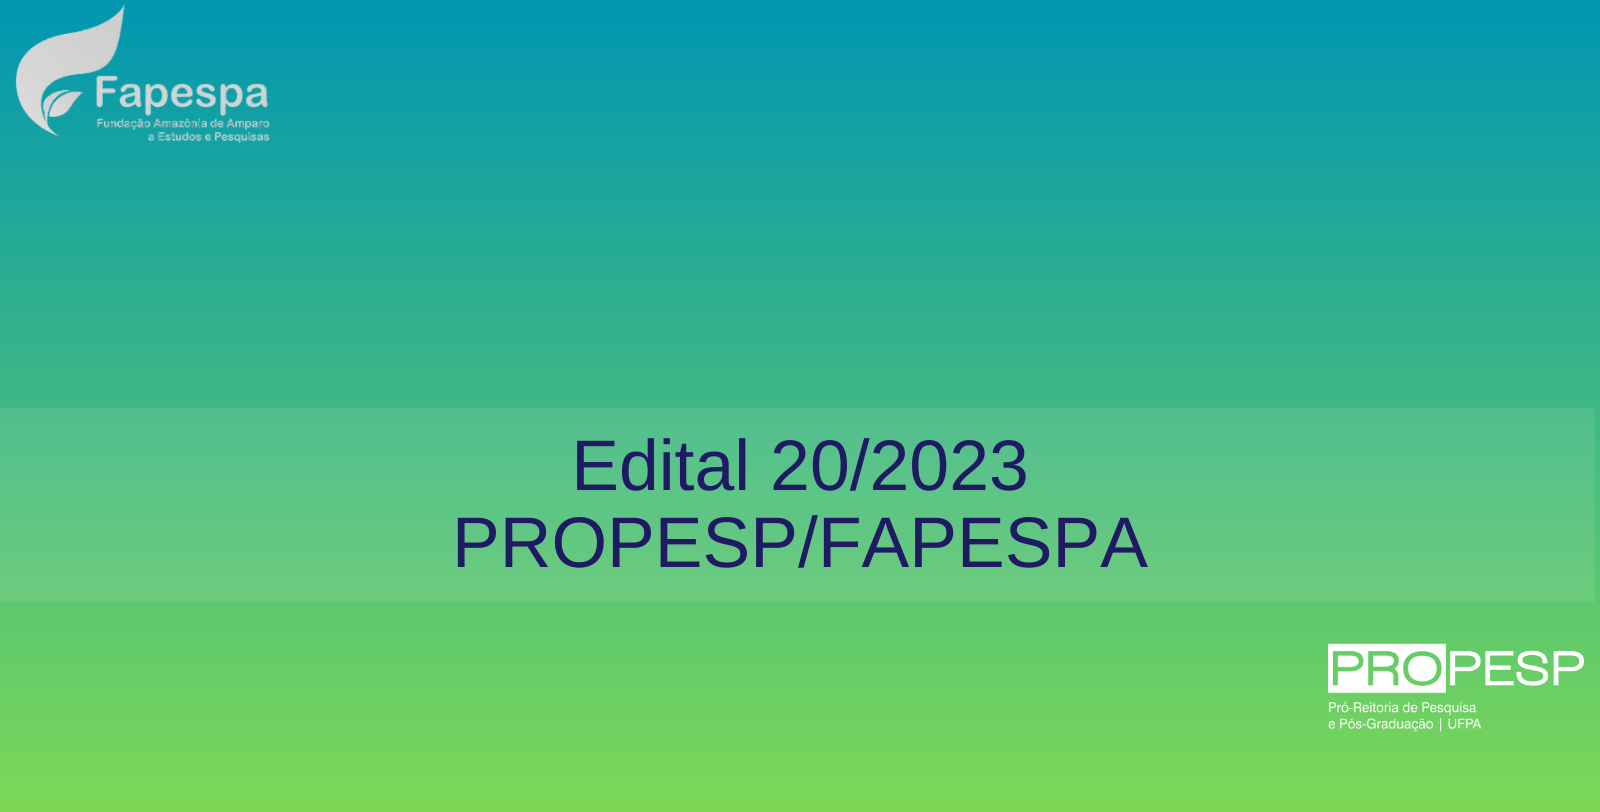 Edital 20/2023 - PROPESP/FAPESPA (Bolsas de Mestrado Profissional) - Resultado Preliminar da 2ª Fase